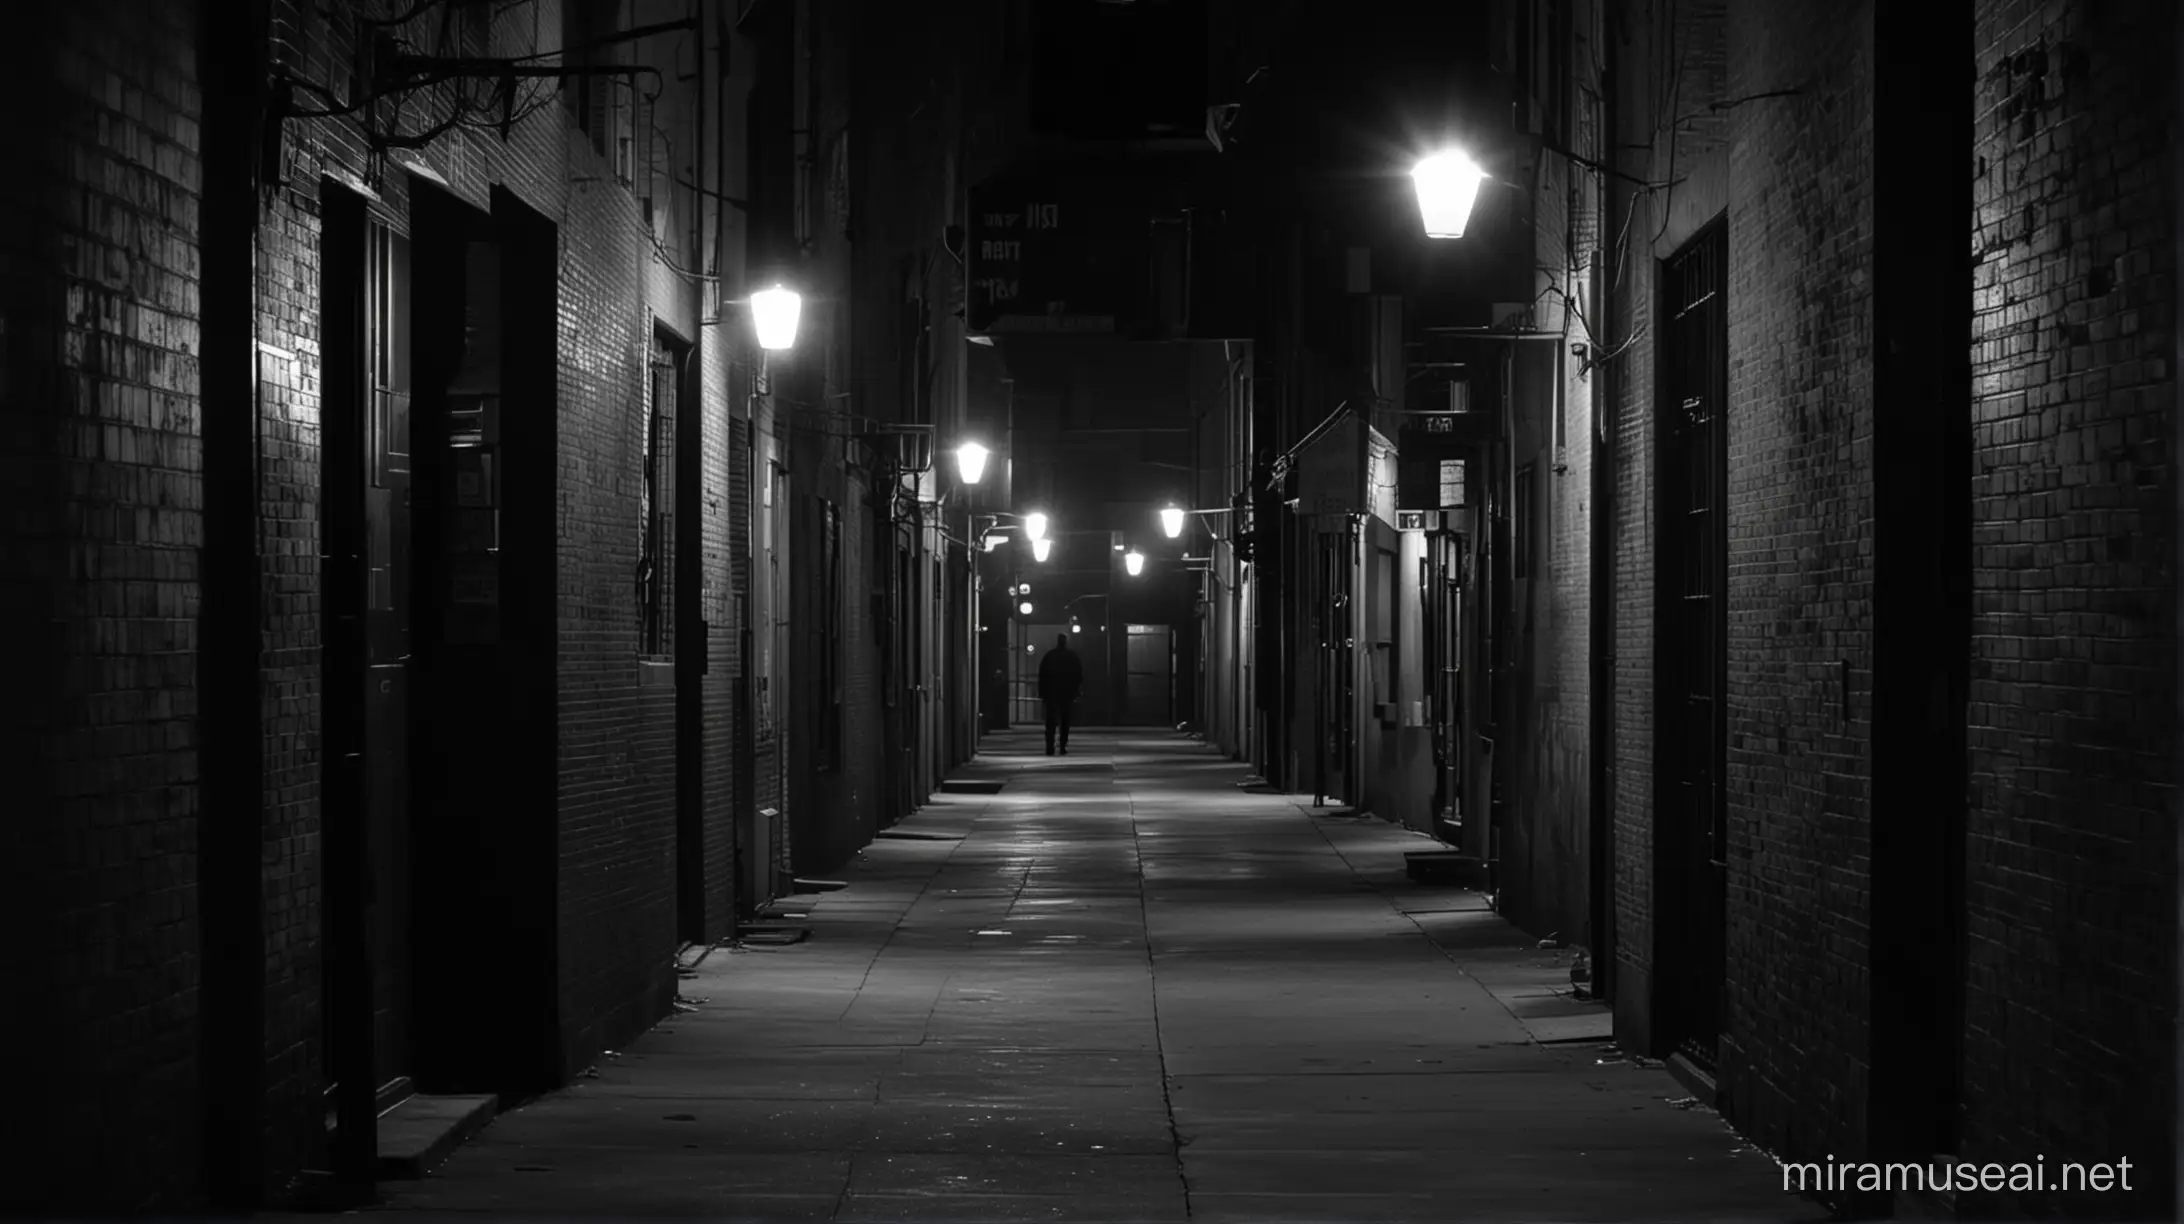 Shot of a long, empty, dimly lit alley, shot in 1950's film noir style.